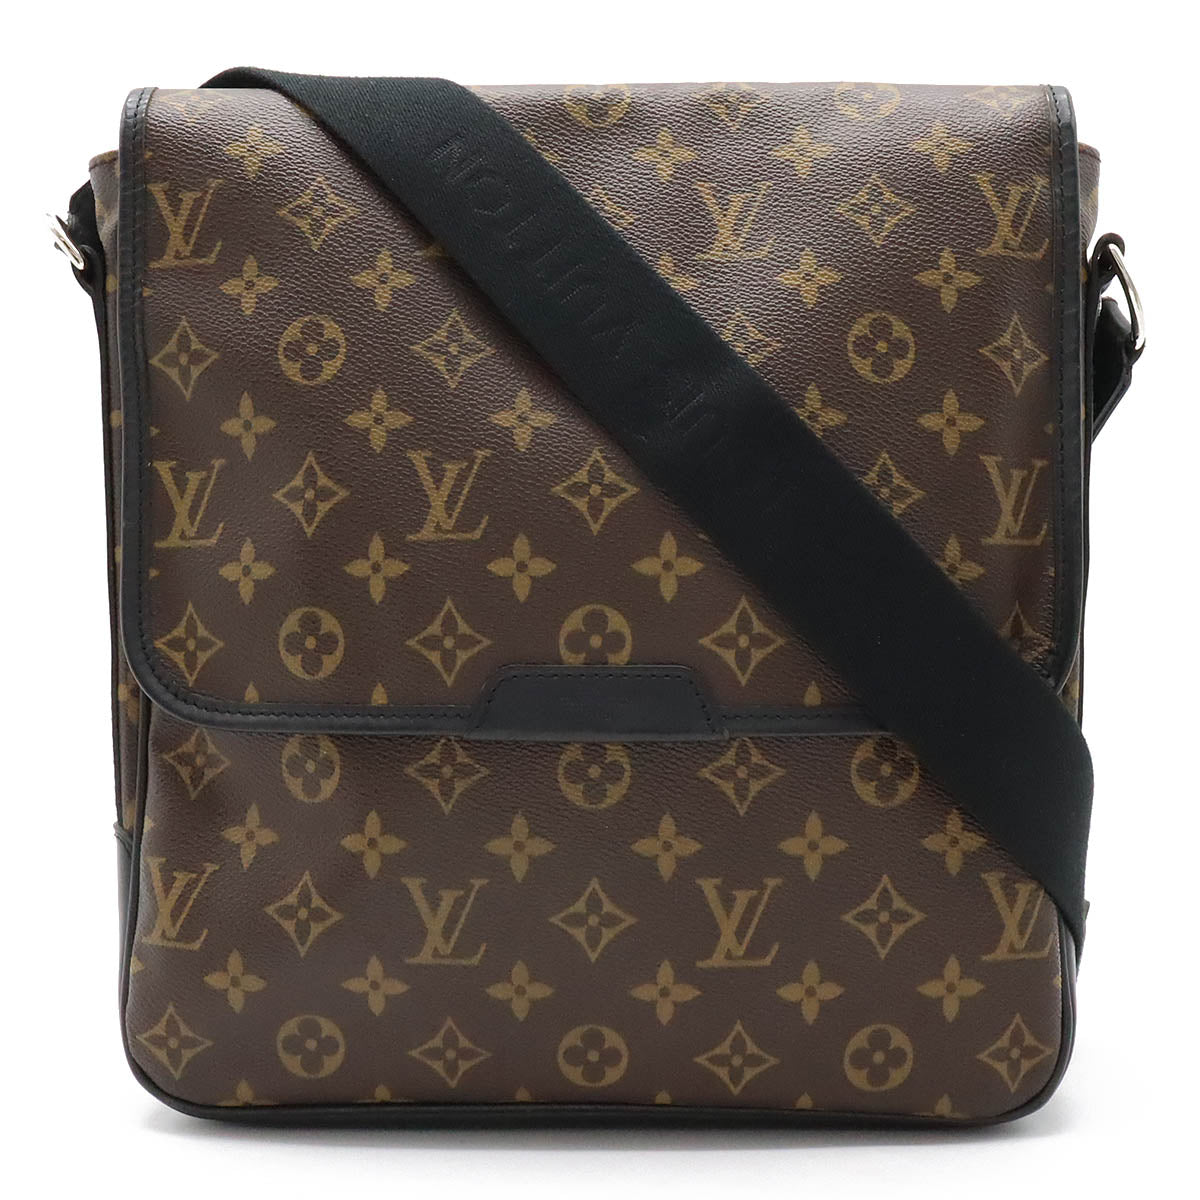 Vintage Louis Vuitton Monogram Messenger Bag with Provenance